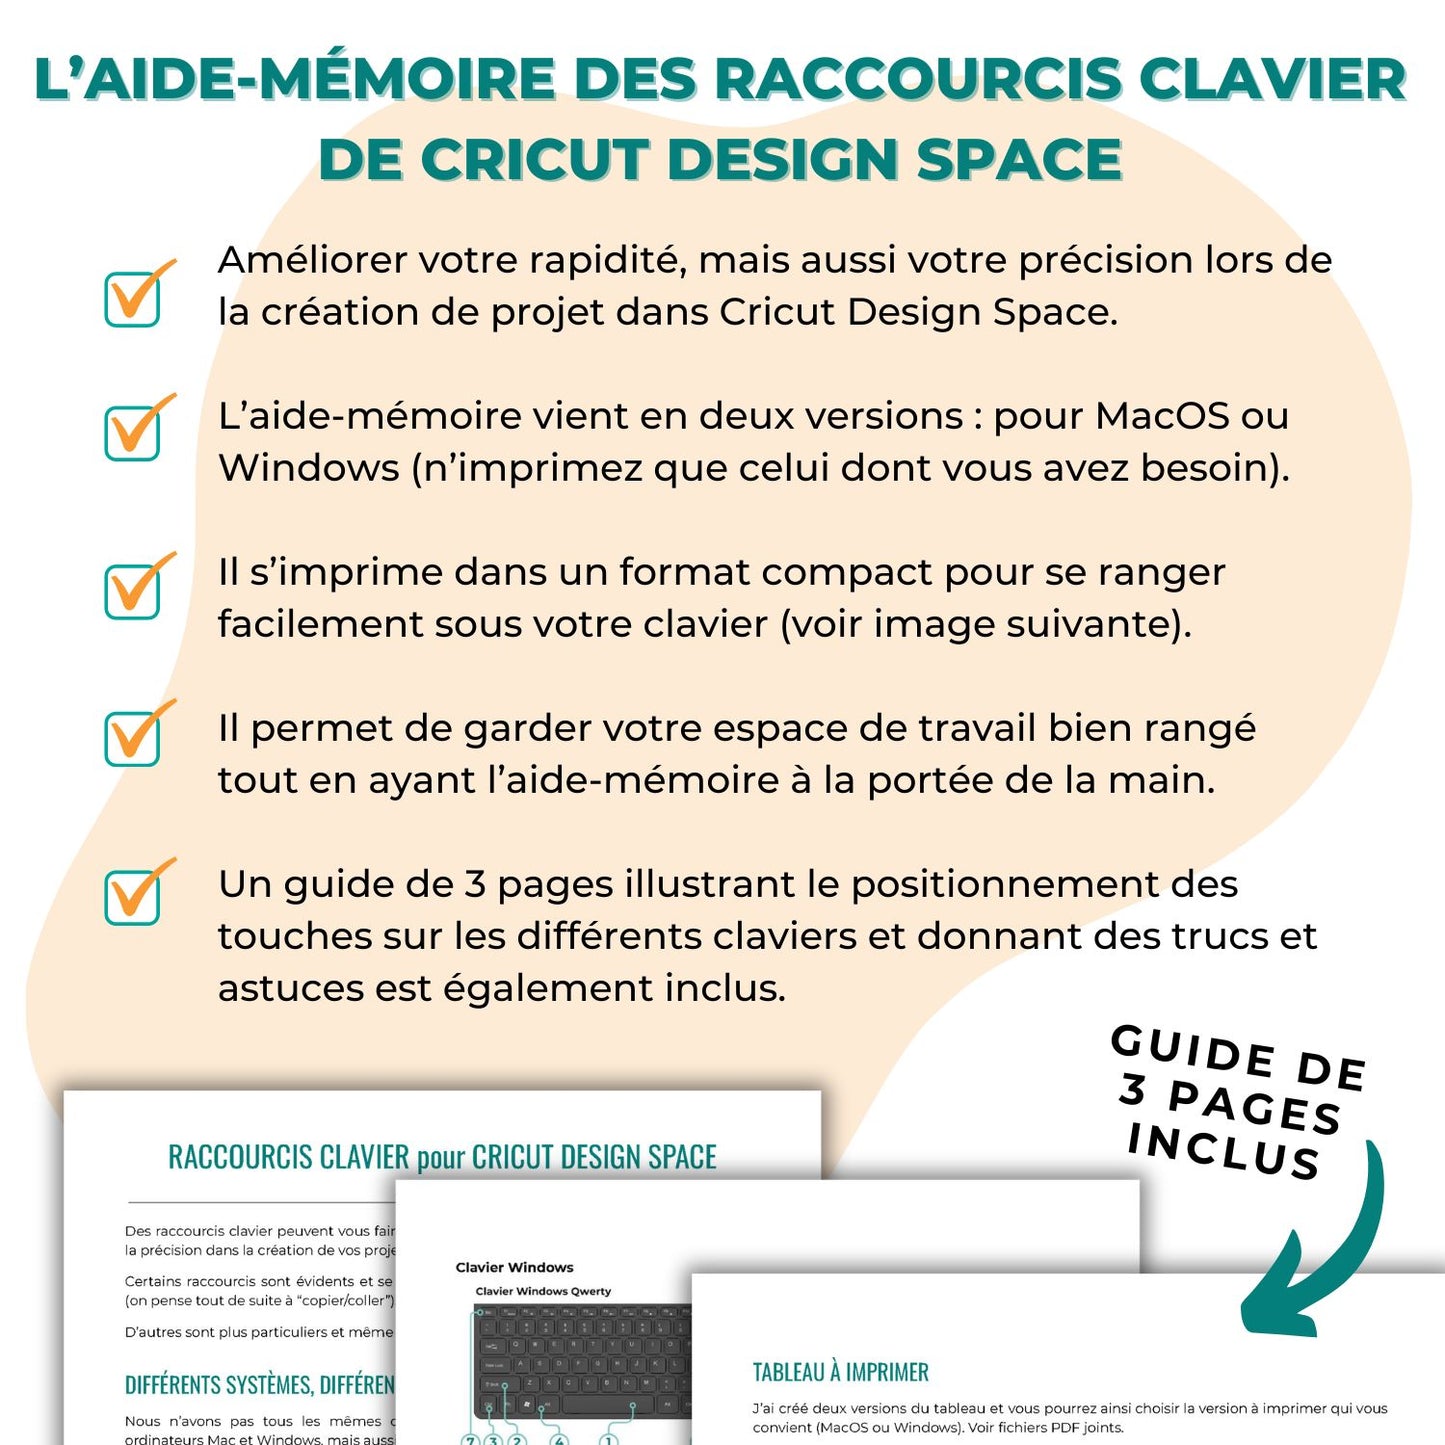 Image illustrant le guide de 3 pages inclus et les avantages de l'aide-mémoire sur les raccourcis clavier de Cricut Design Space en français.